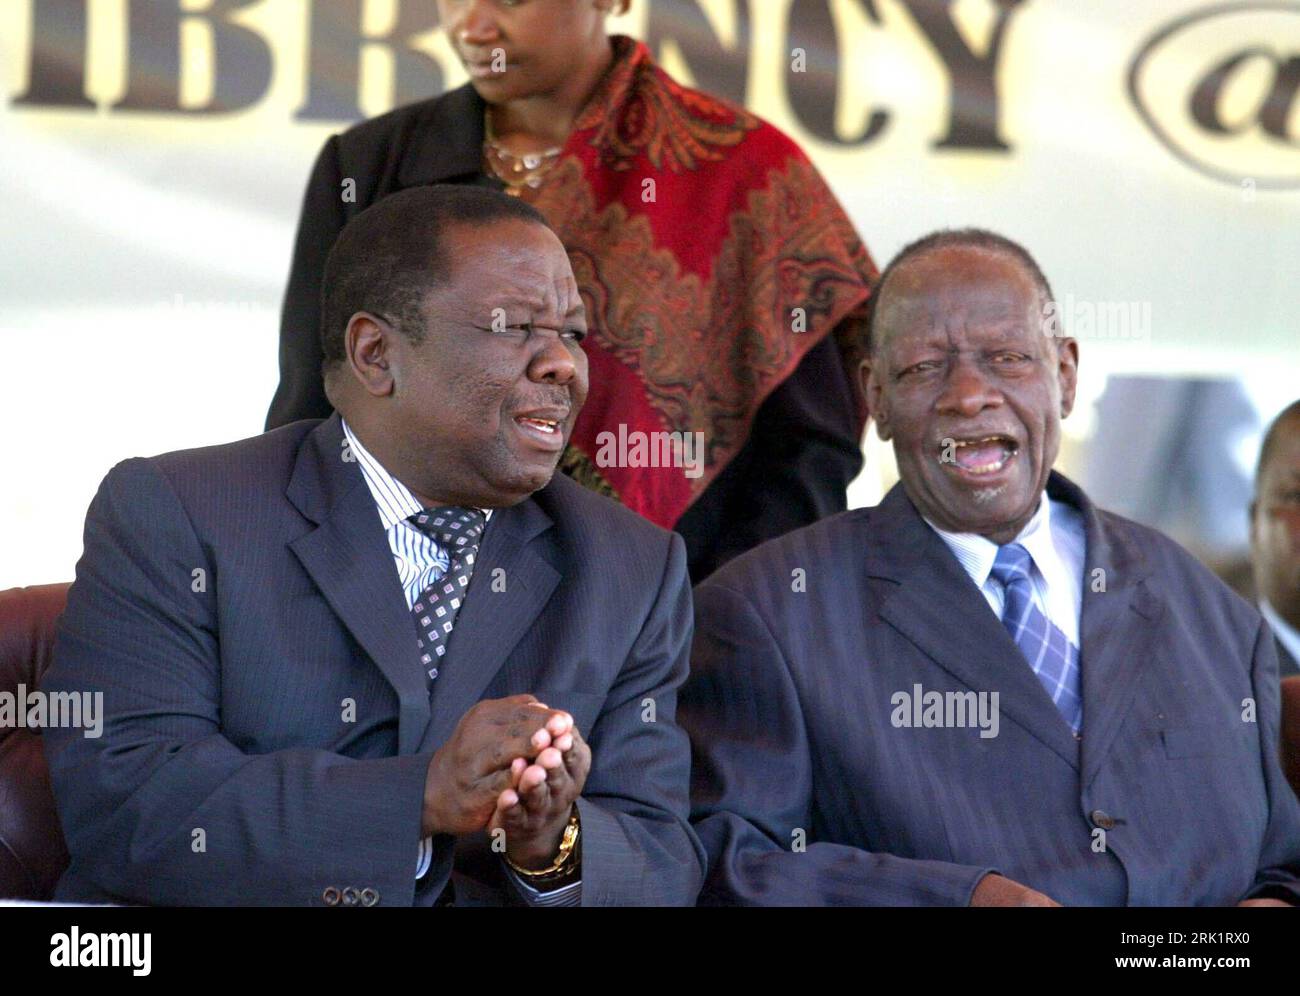 Bildnummer: 52978936 Datum: 18.04.2009 Copyright: imago/Xinhua Premierminister Morgan Tsvangirai (li.) Und Vizepräsident Joseph Musika (beide Simbabwe) während der Feierlichkeiten zum 29. Unabhängigstag in Harare PUBLICATIONxNOTxINxCHN, Personen , premiumd; 2009, Simbabwe, Unabhängigkeitstag, Feier, Jubiläumsveranstaltungen, Unabhängigkeitsfeier; quer, Kbdig, Gruppenbild, Randbild, gente, o0 Unabhängigkeit Bildnummer 52978936 Data 18 04 2009 Copyright Imago XINHUA il primo ministro Morgan Tsvangirai ha lasciato e il vicepresidente Joseph Musika entrambi Zimbabwe durante le celebrazioni per il 29 Unabhäng Foto Stock